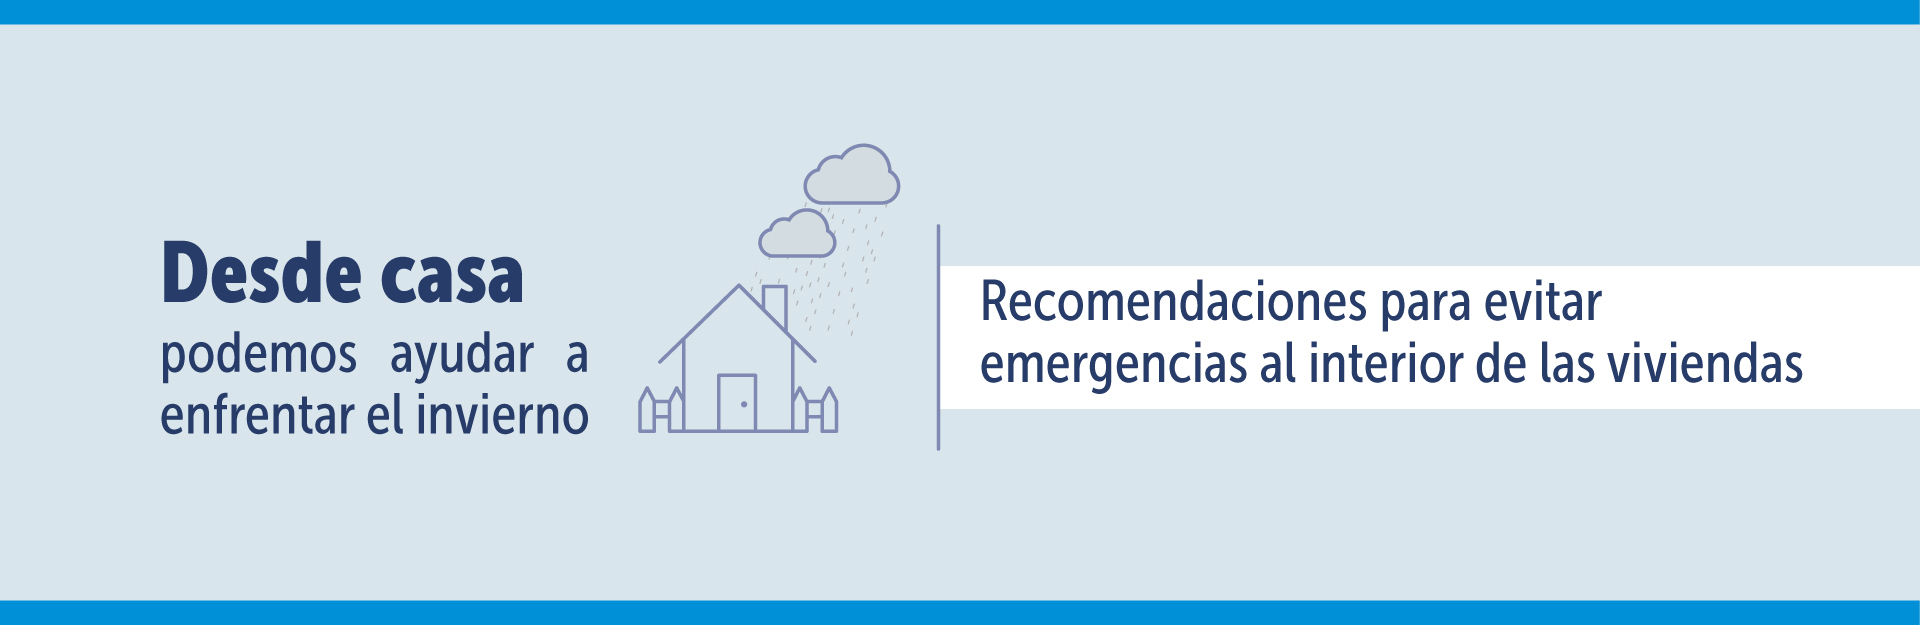 Recomendaciones para evitar emergencias al interior de las viviendas